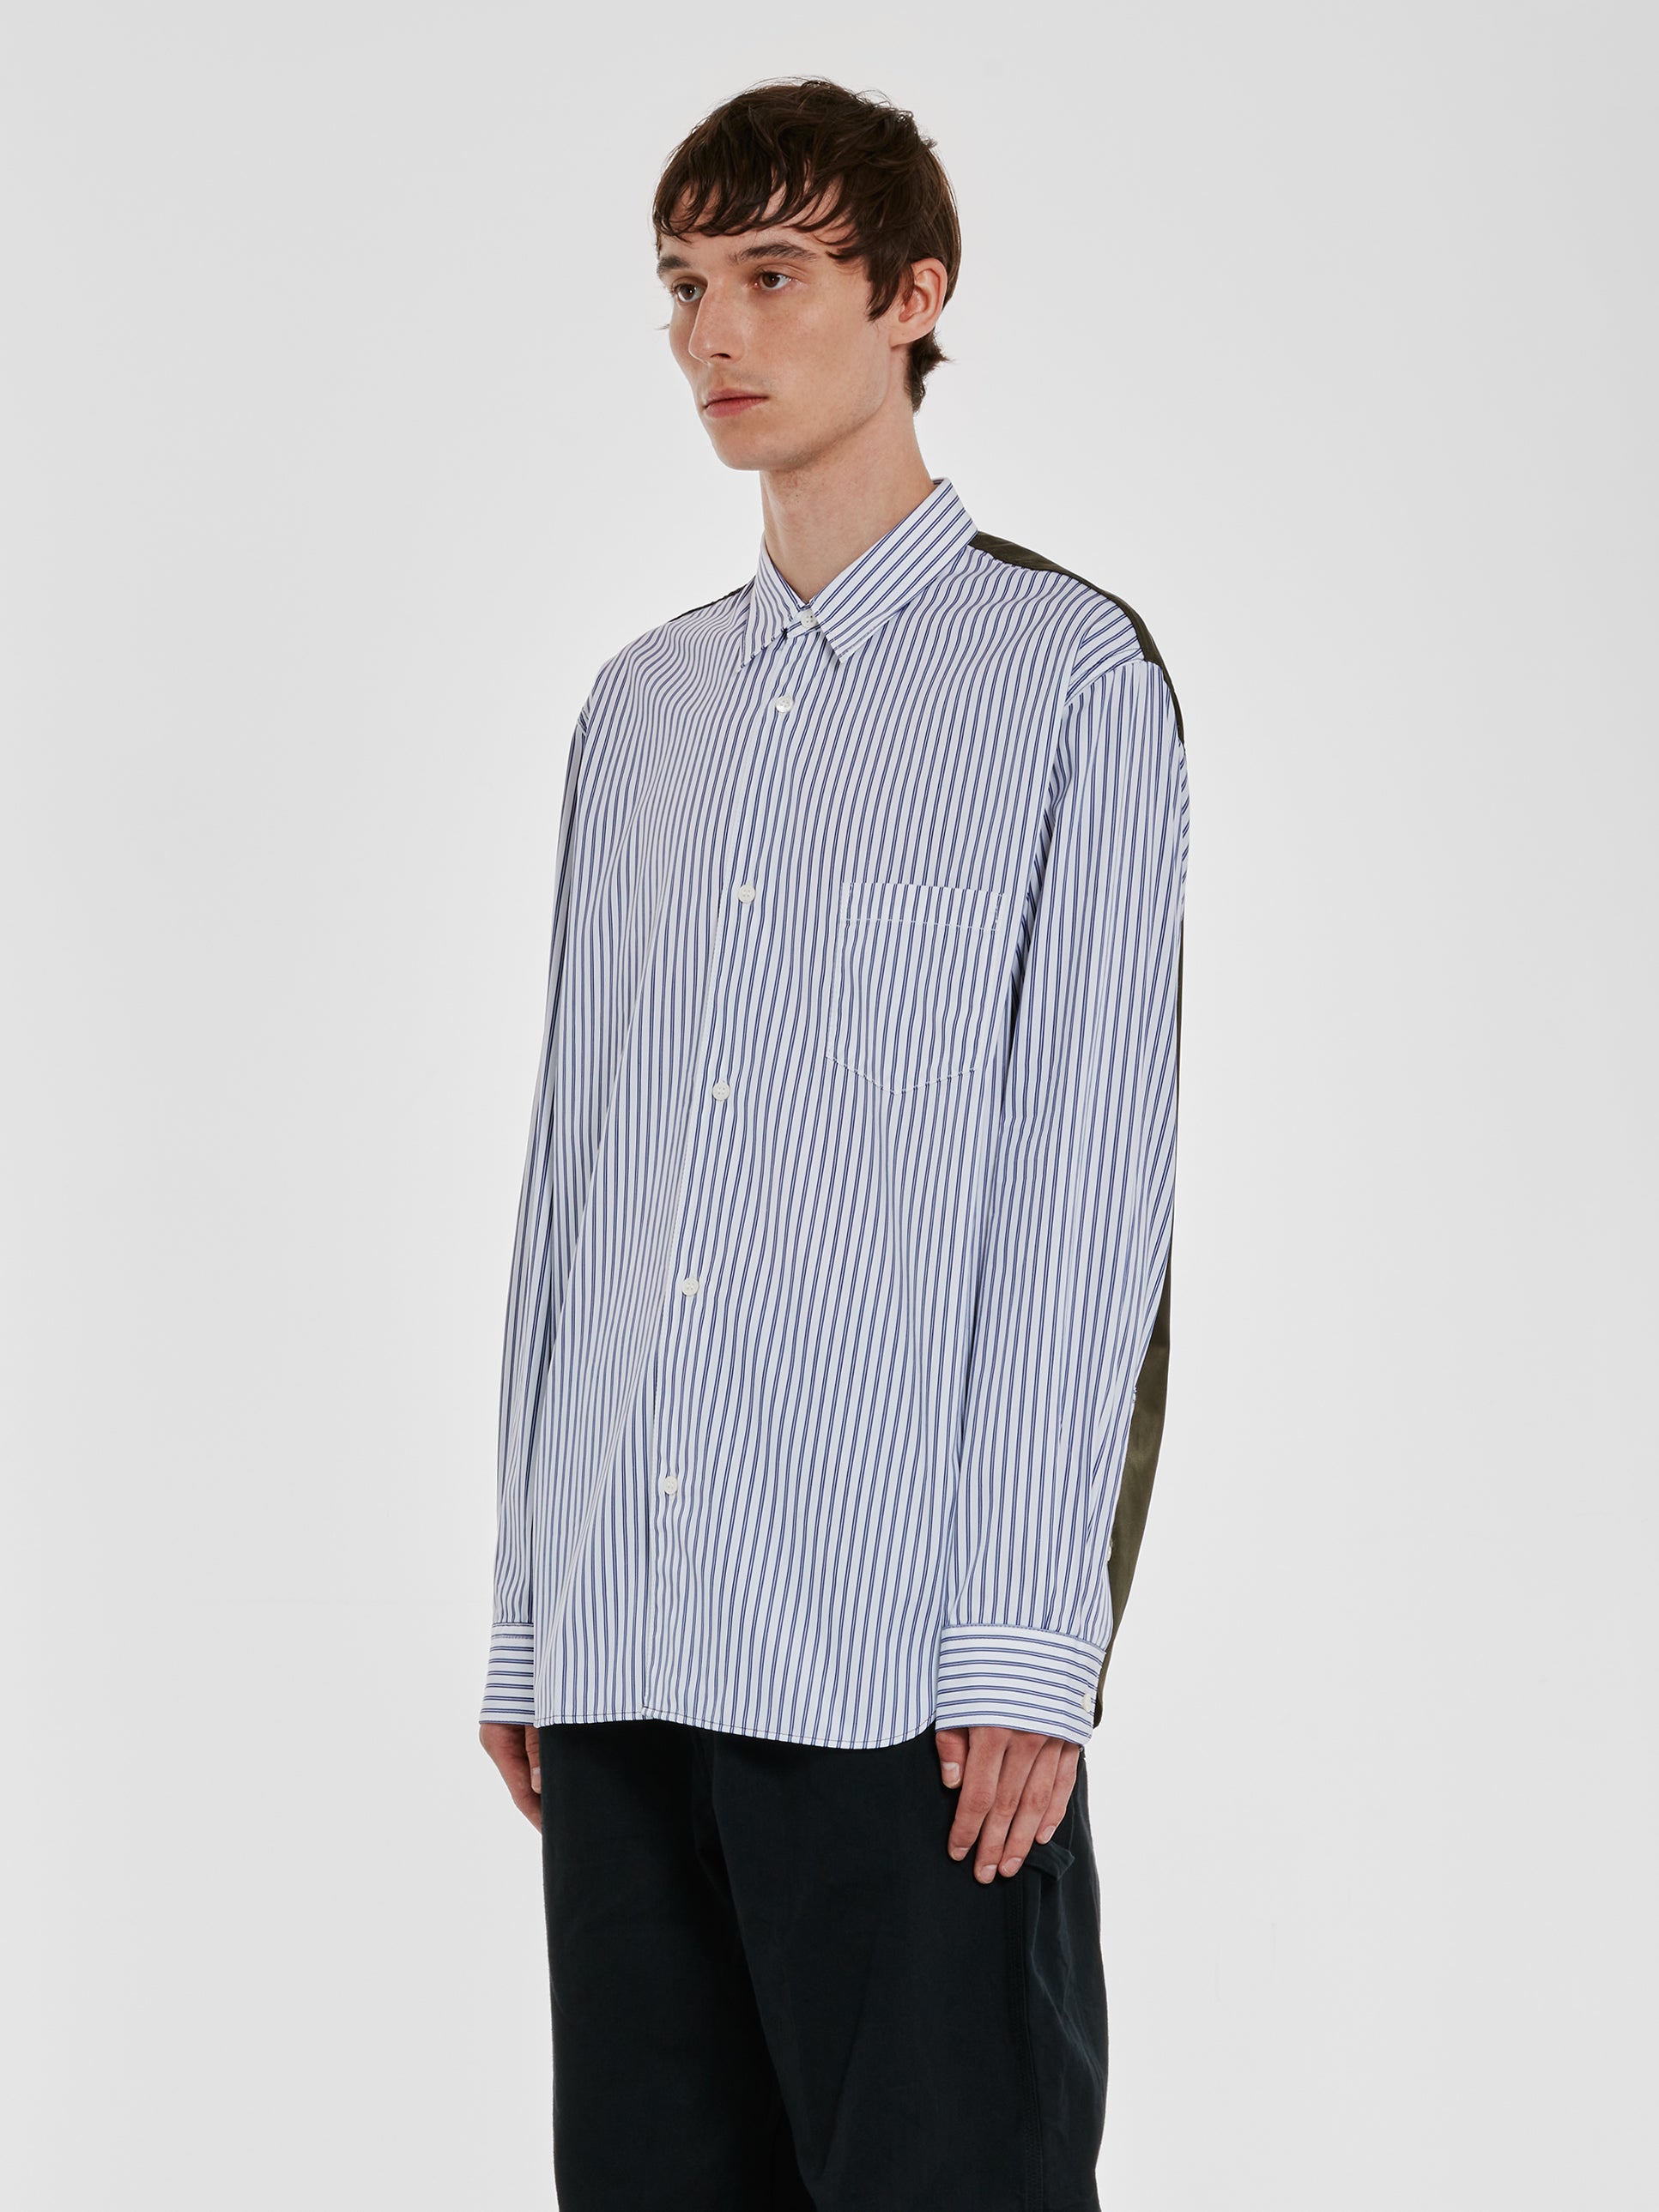 Comme des Garçons Homme - Men’s Contrast Nylon Shirt - (White/Blue/Khaki) view 2